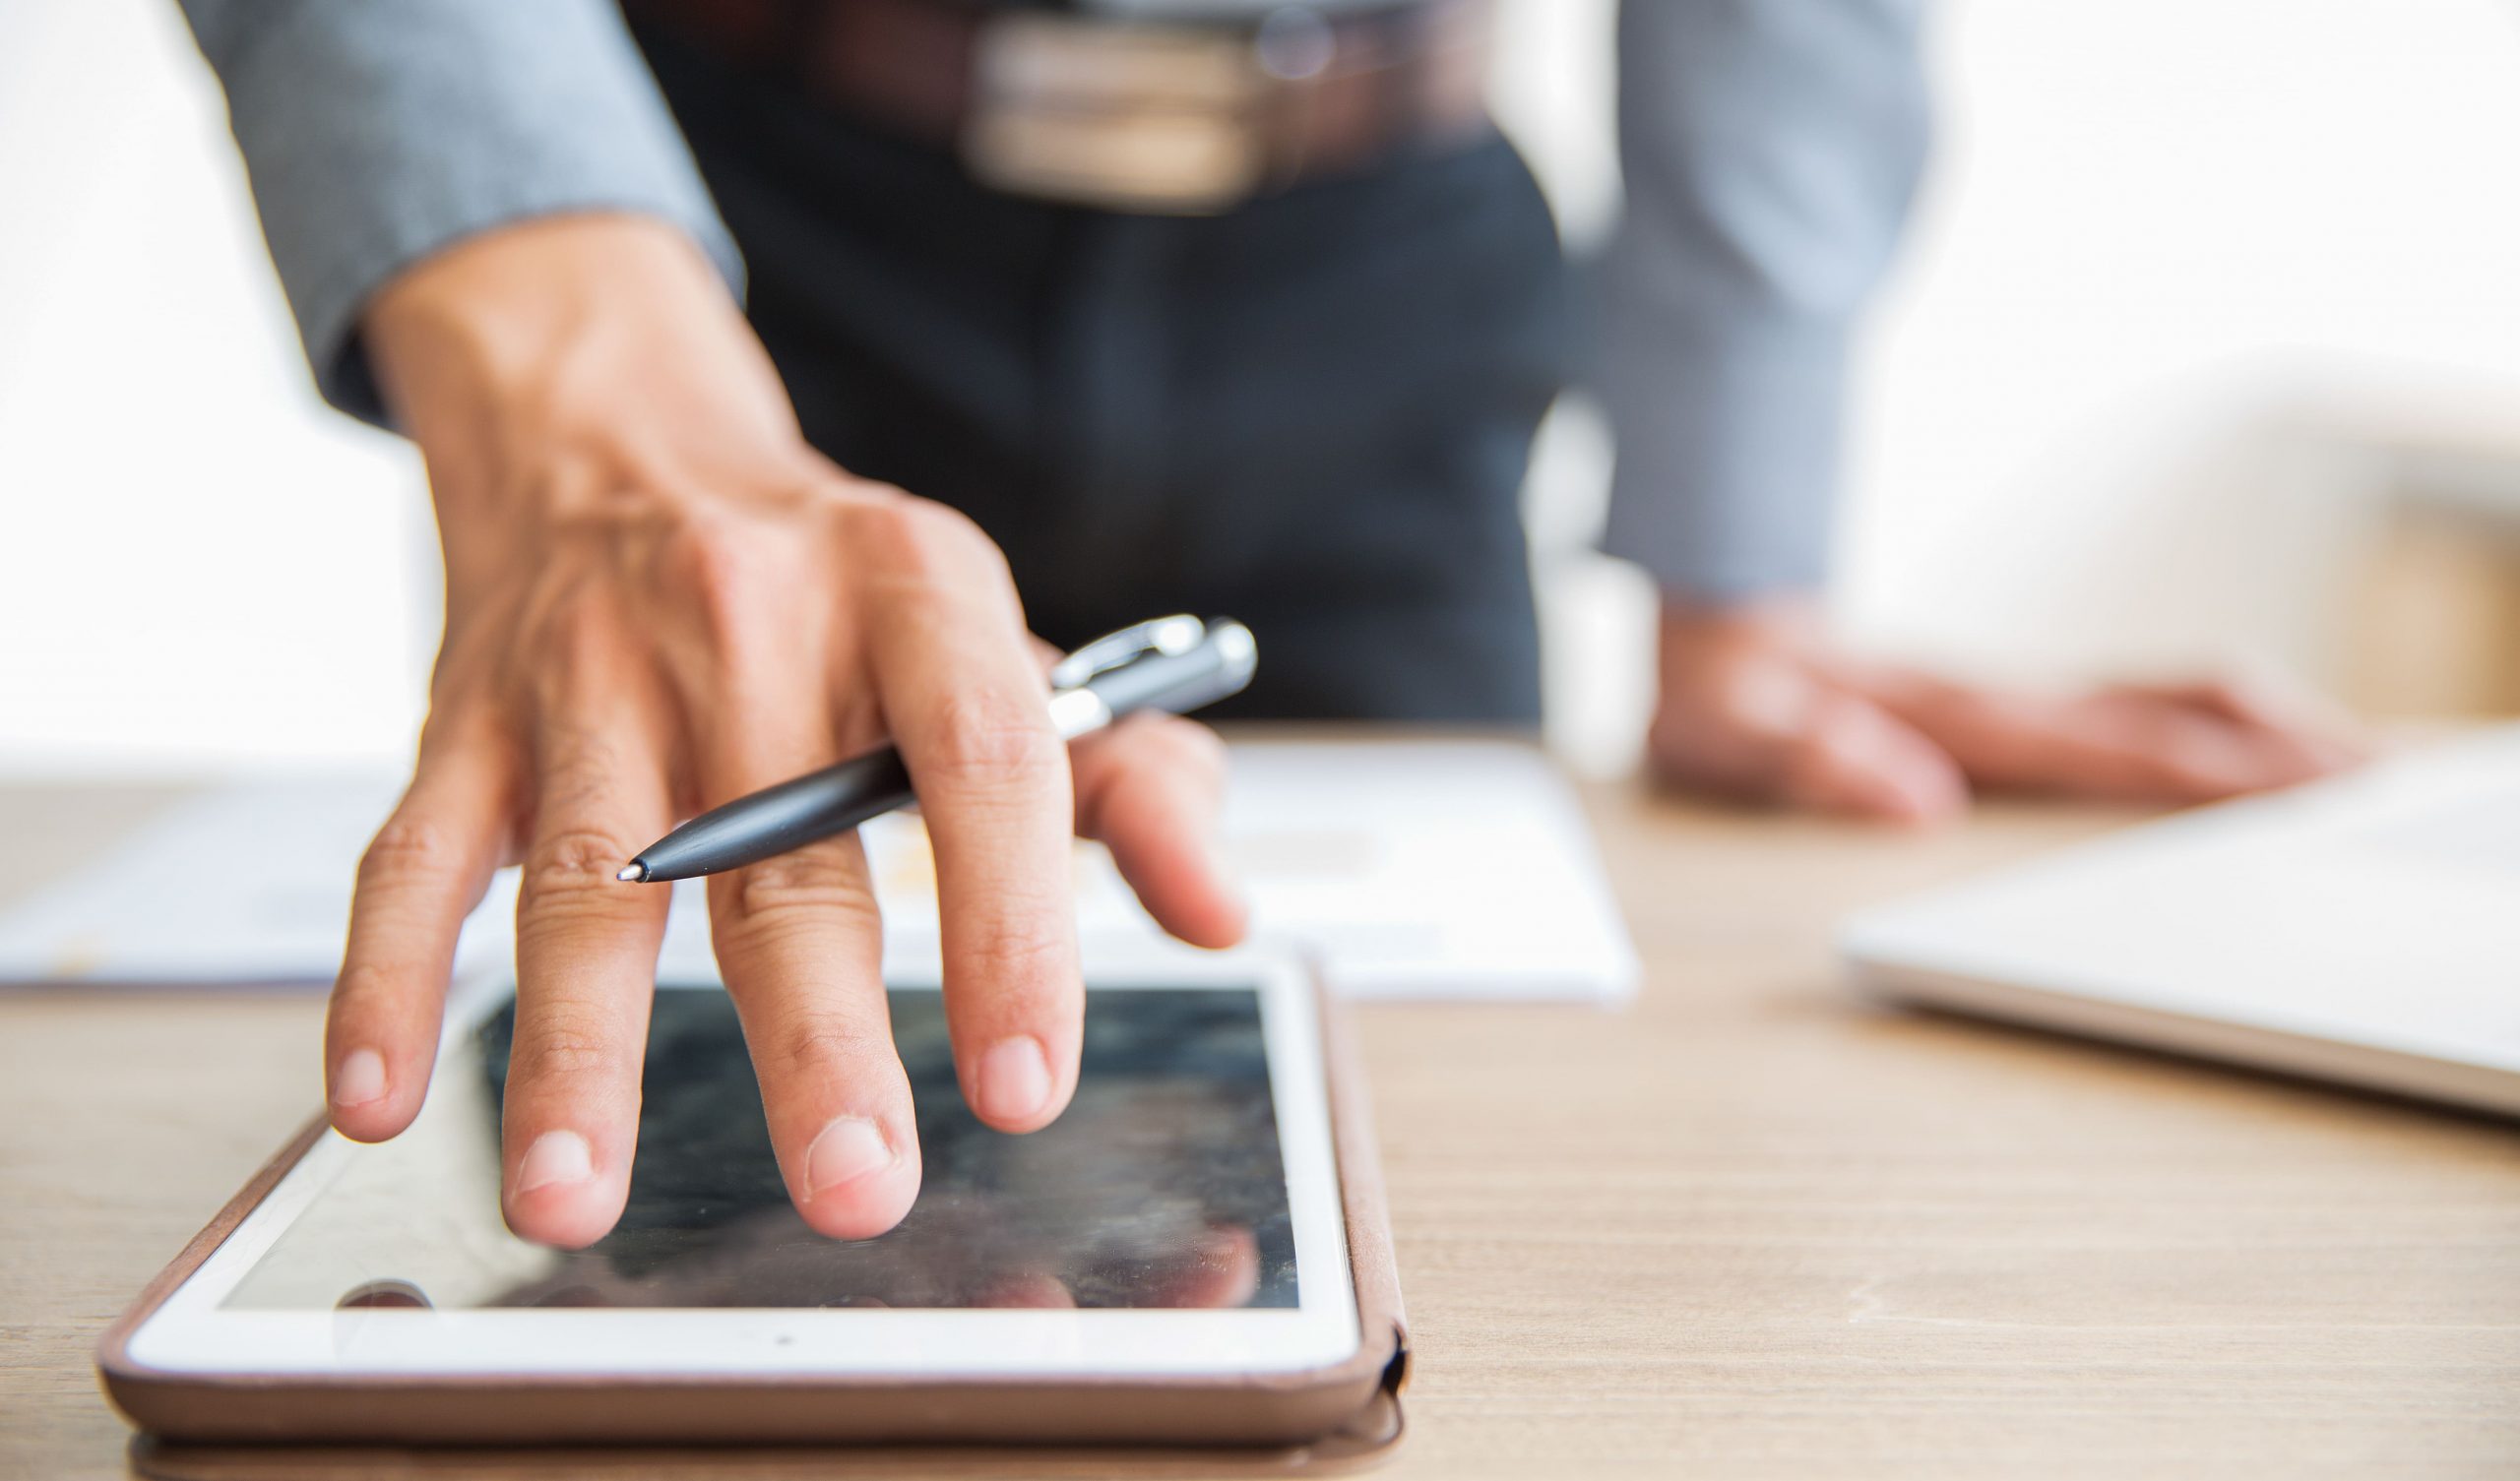 Mão de um homem executivo tocando a tela de um tablet enquanto segura uma caneta, representando uma assinatura digital. O dispositivo eletrônico está sobre uma mesa de madeira junto a outros objetos, como uma folha de papel e um notebook no canto direito.